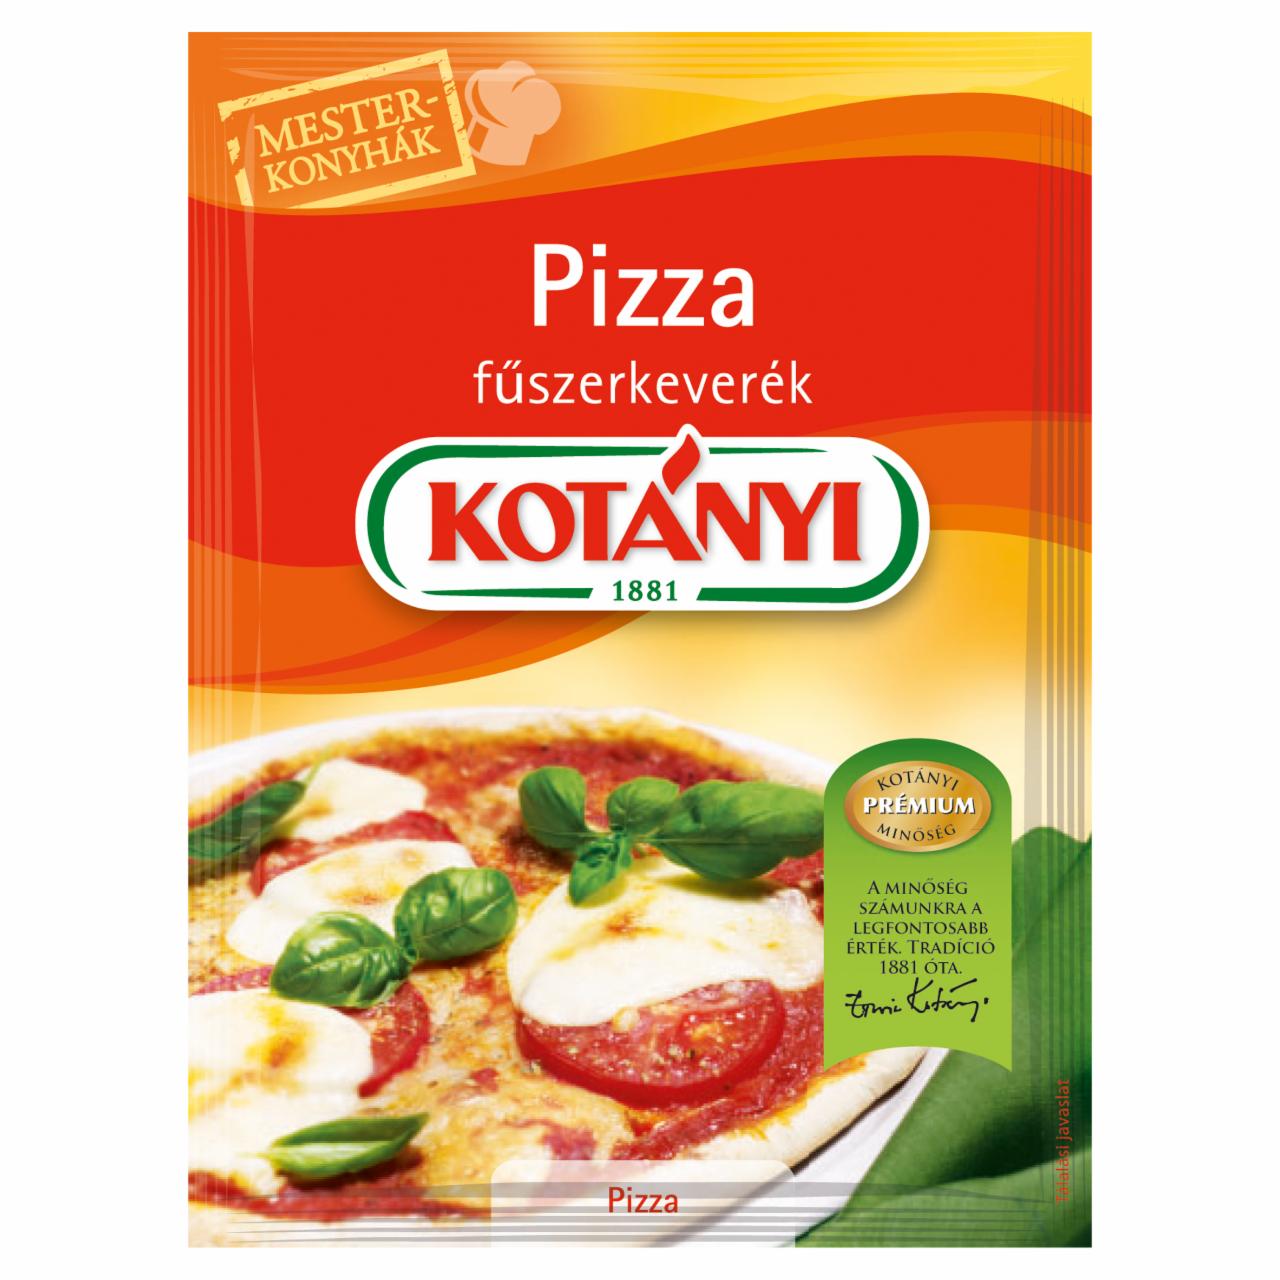 Képek - Kotányi Mesterkonyhák pizza fűszerkeverék 18 g